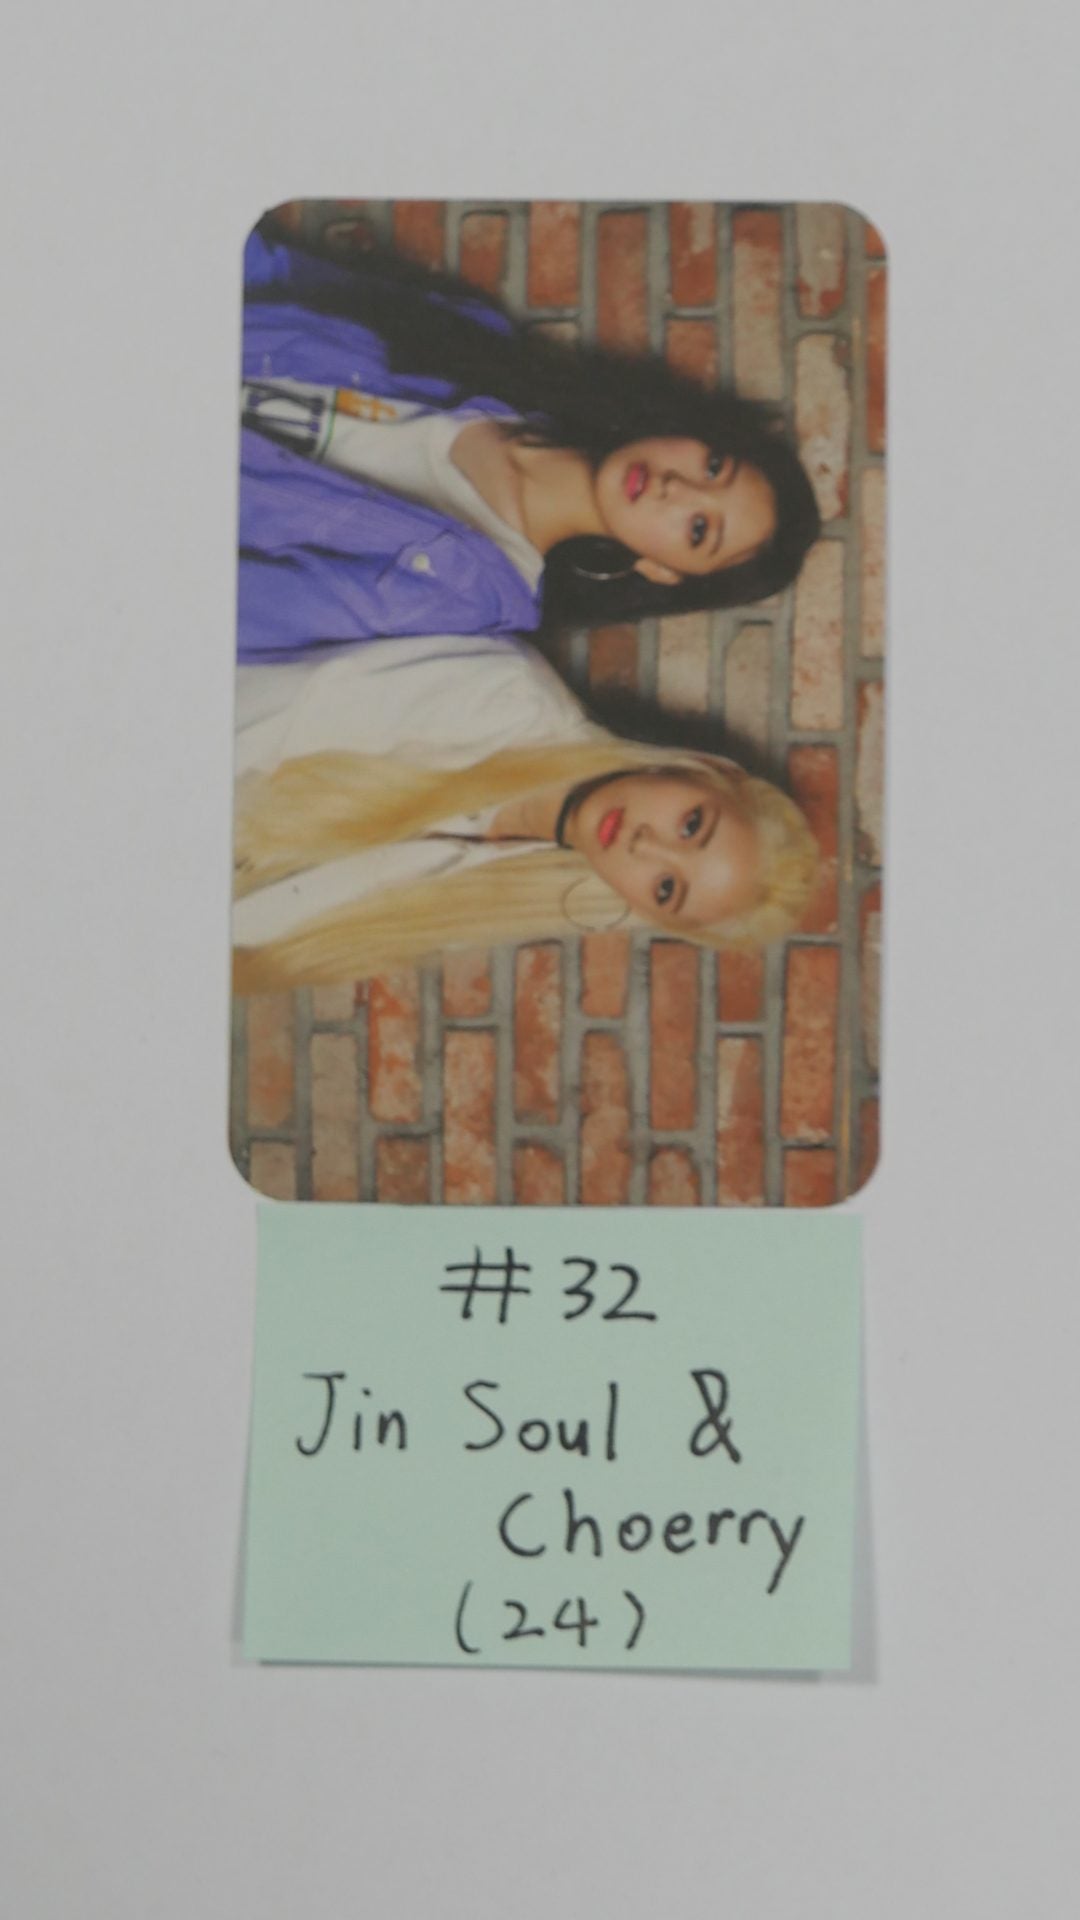 이달의 소녀 - 공식 솔로 &amp; 유닛 포토 카드 (#3)